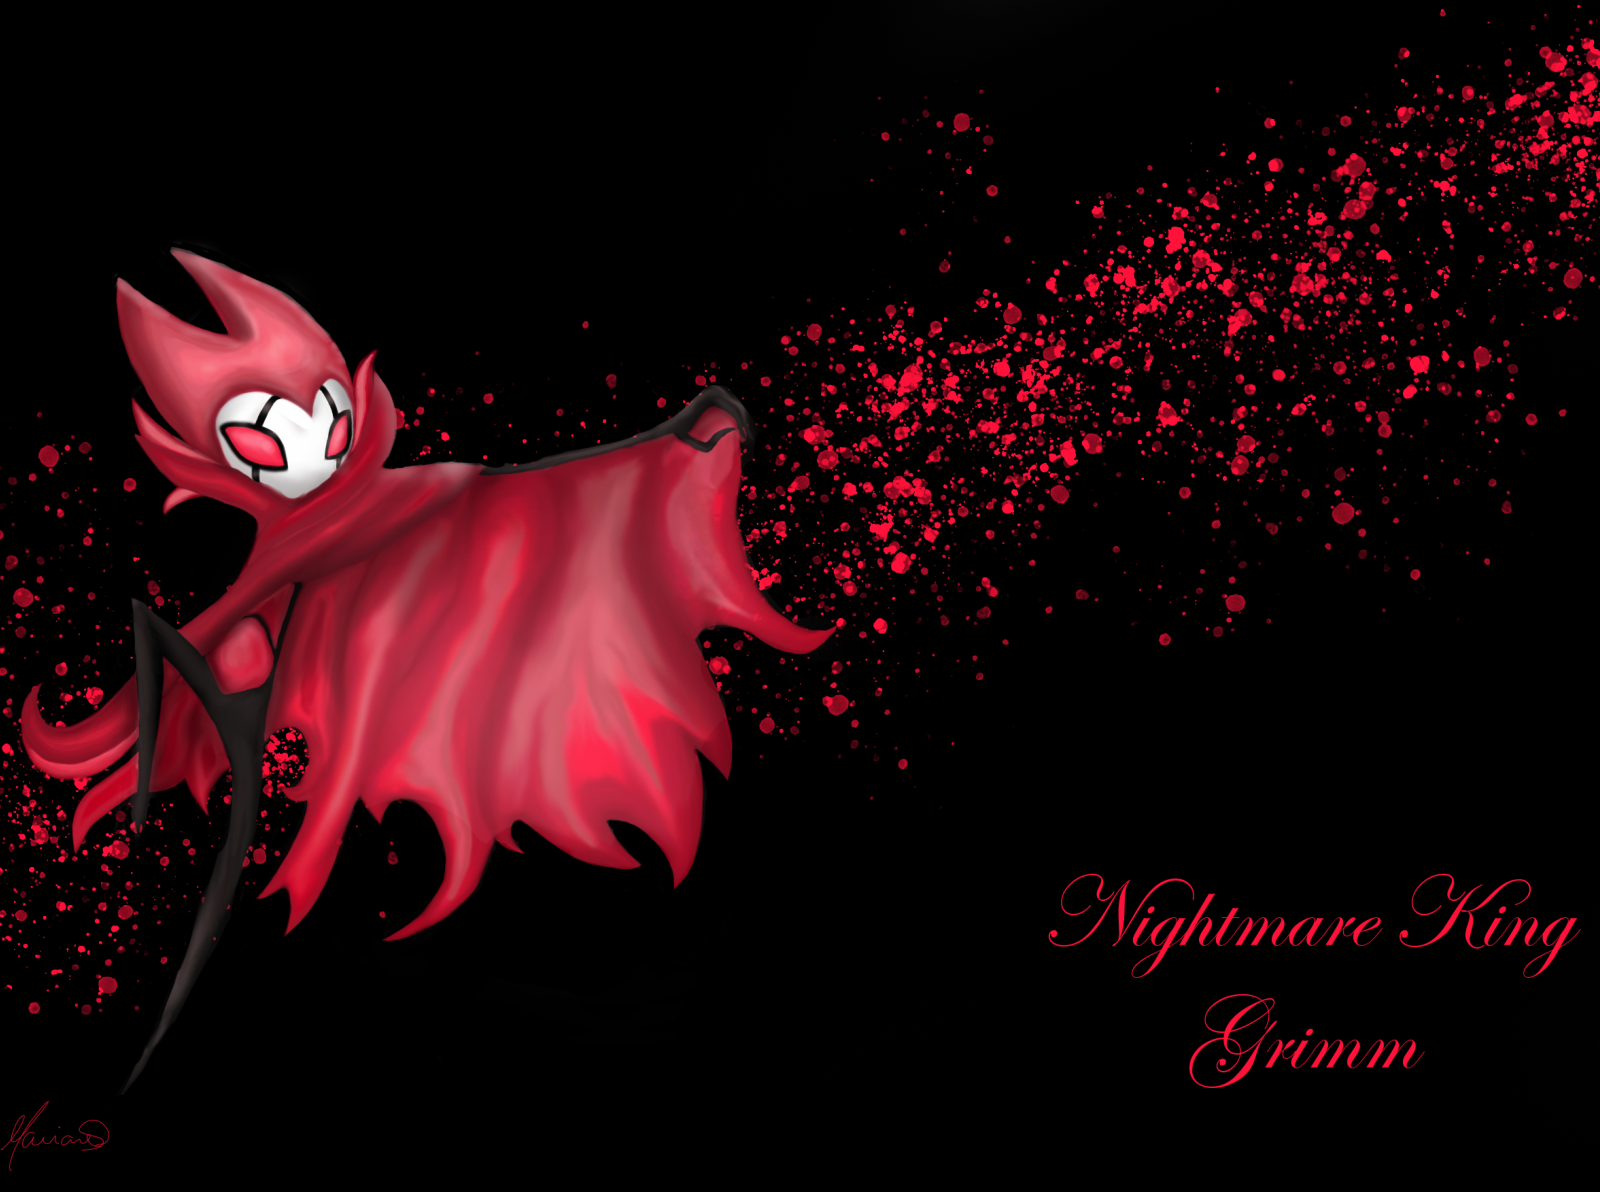 Nightmare King Grimm